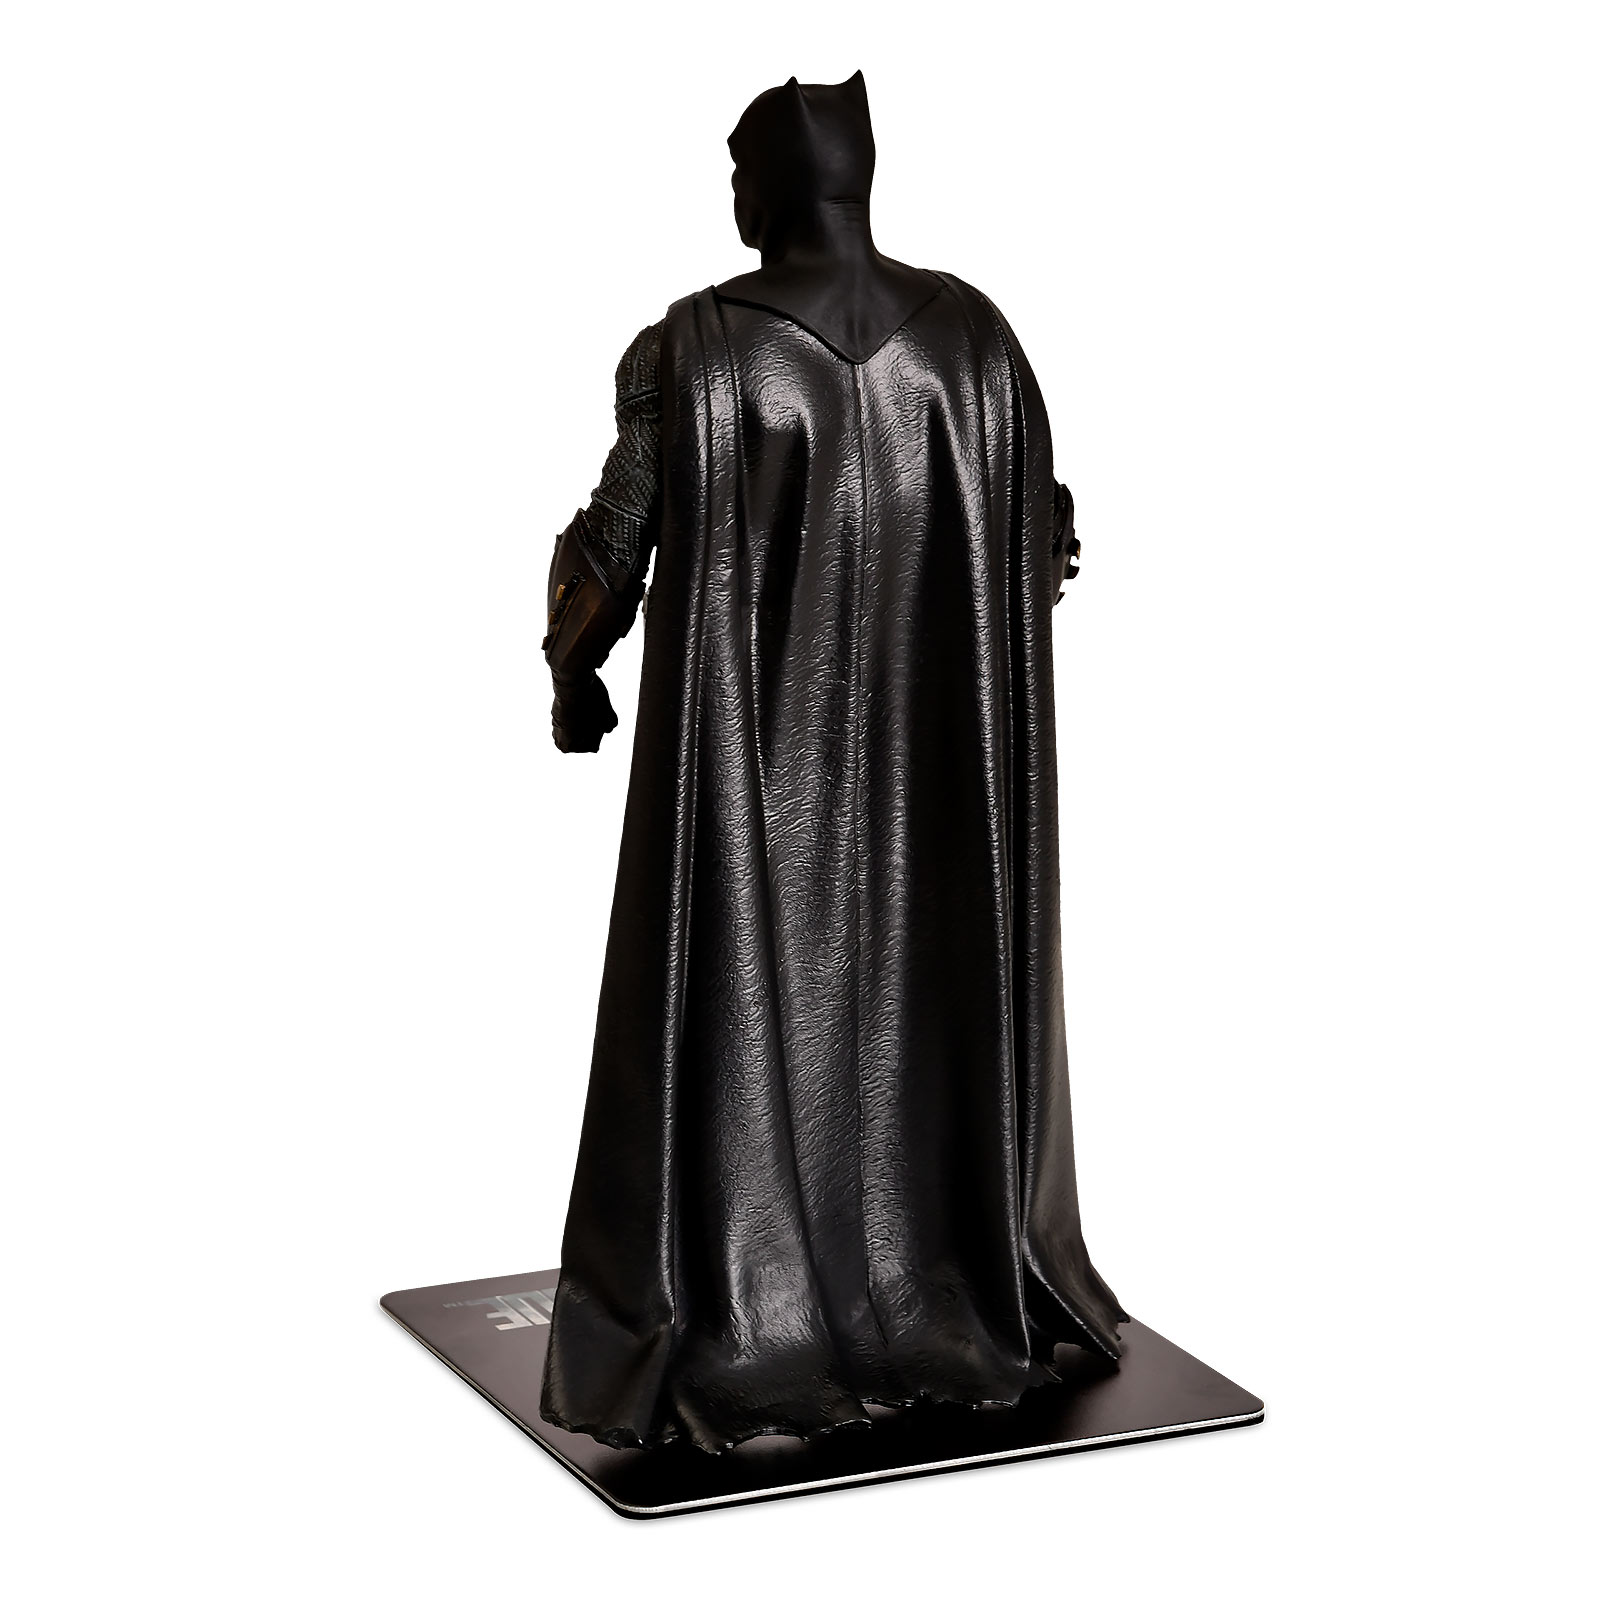 Batman - Justice League ArtFX+ Figur 19 cm